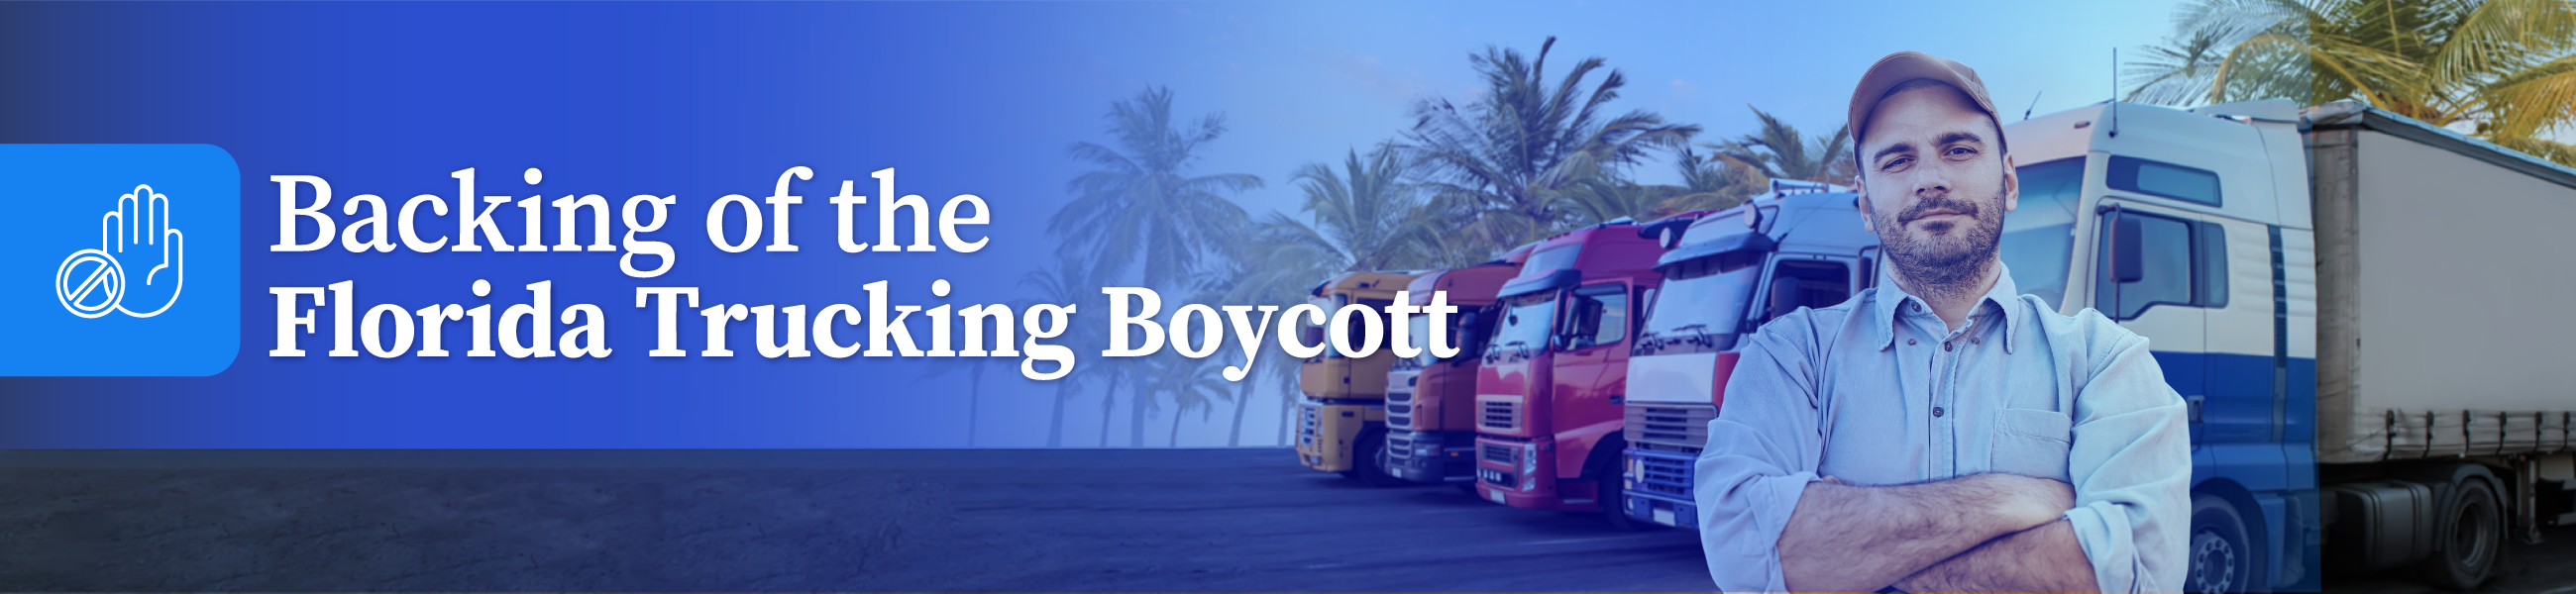 Backing of the Florida Trucking Boycott